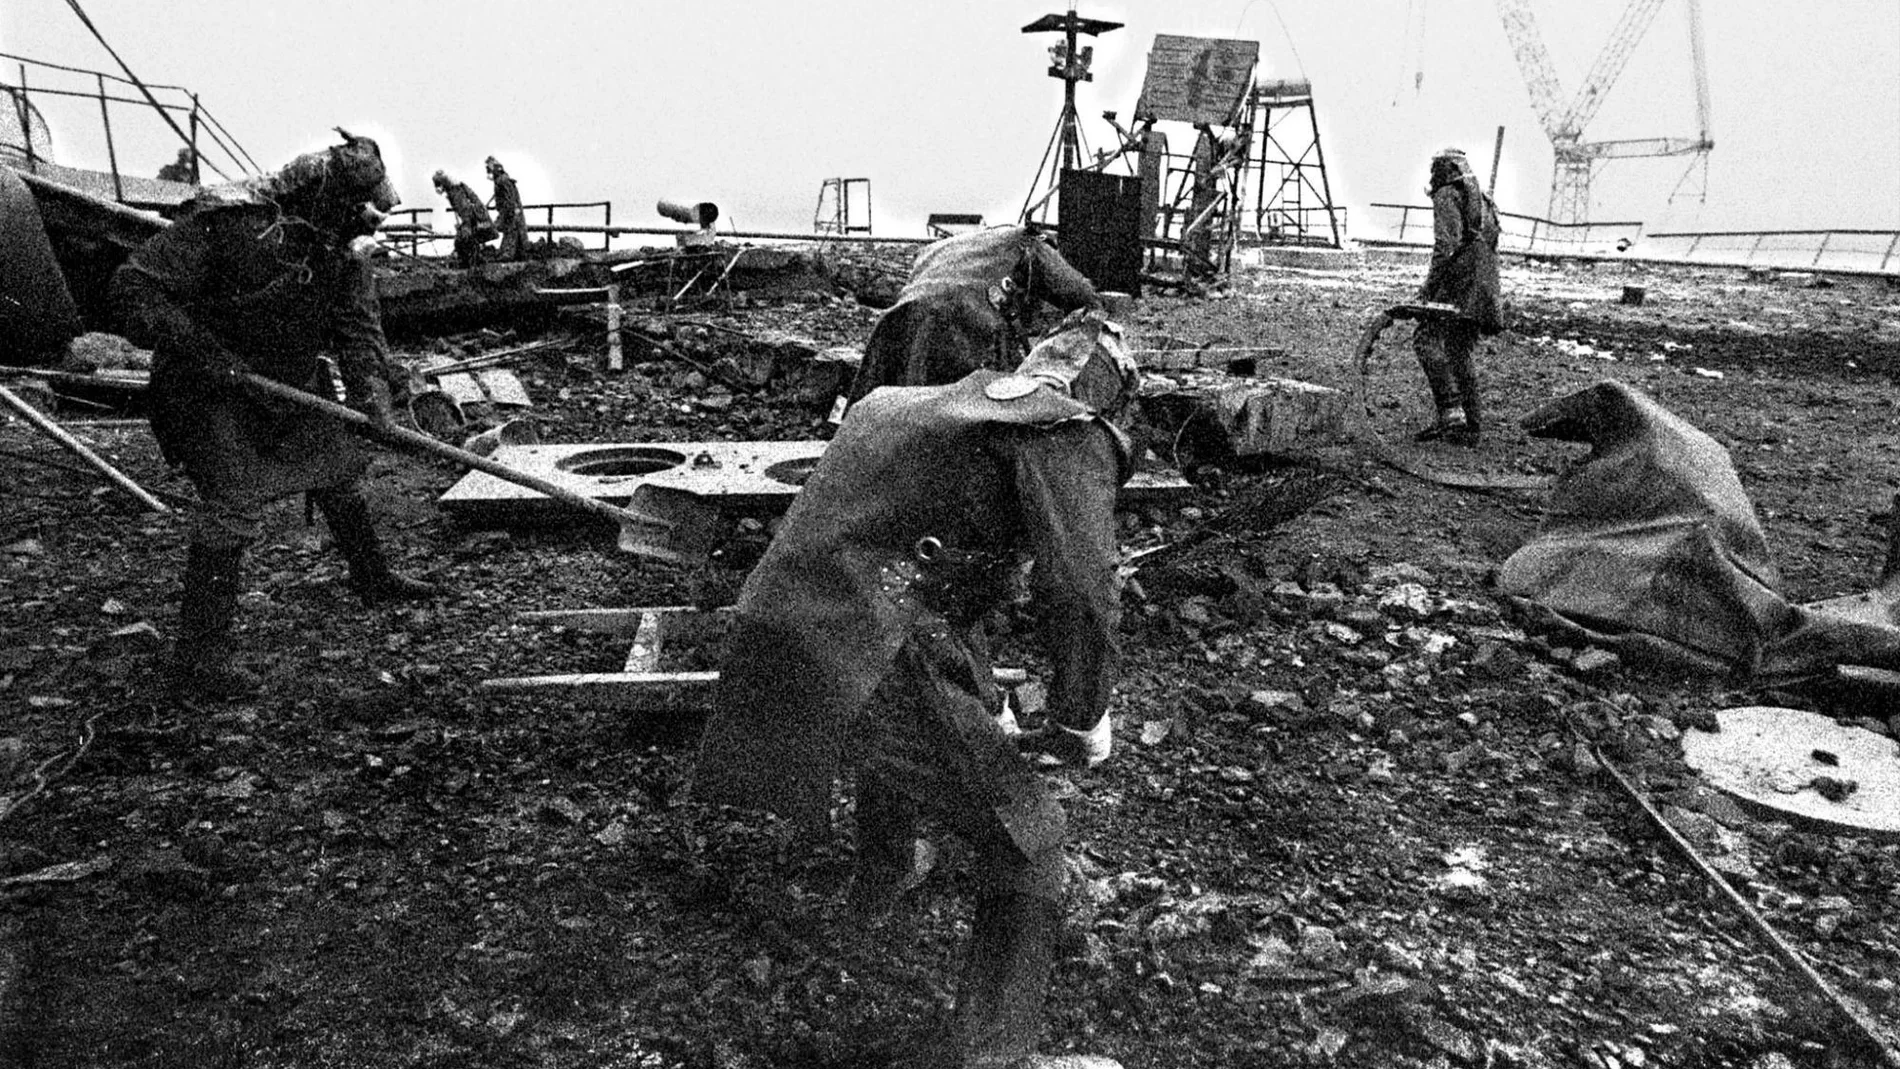 45.000 evacuados. El fuego ardió en Chernóbil durante diez días, mientras el Gobierno mantenía en secreto la magnitud del desastre, ocurrido en 1986